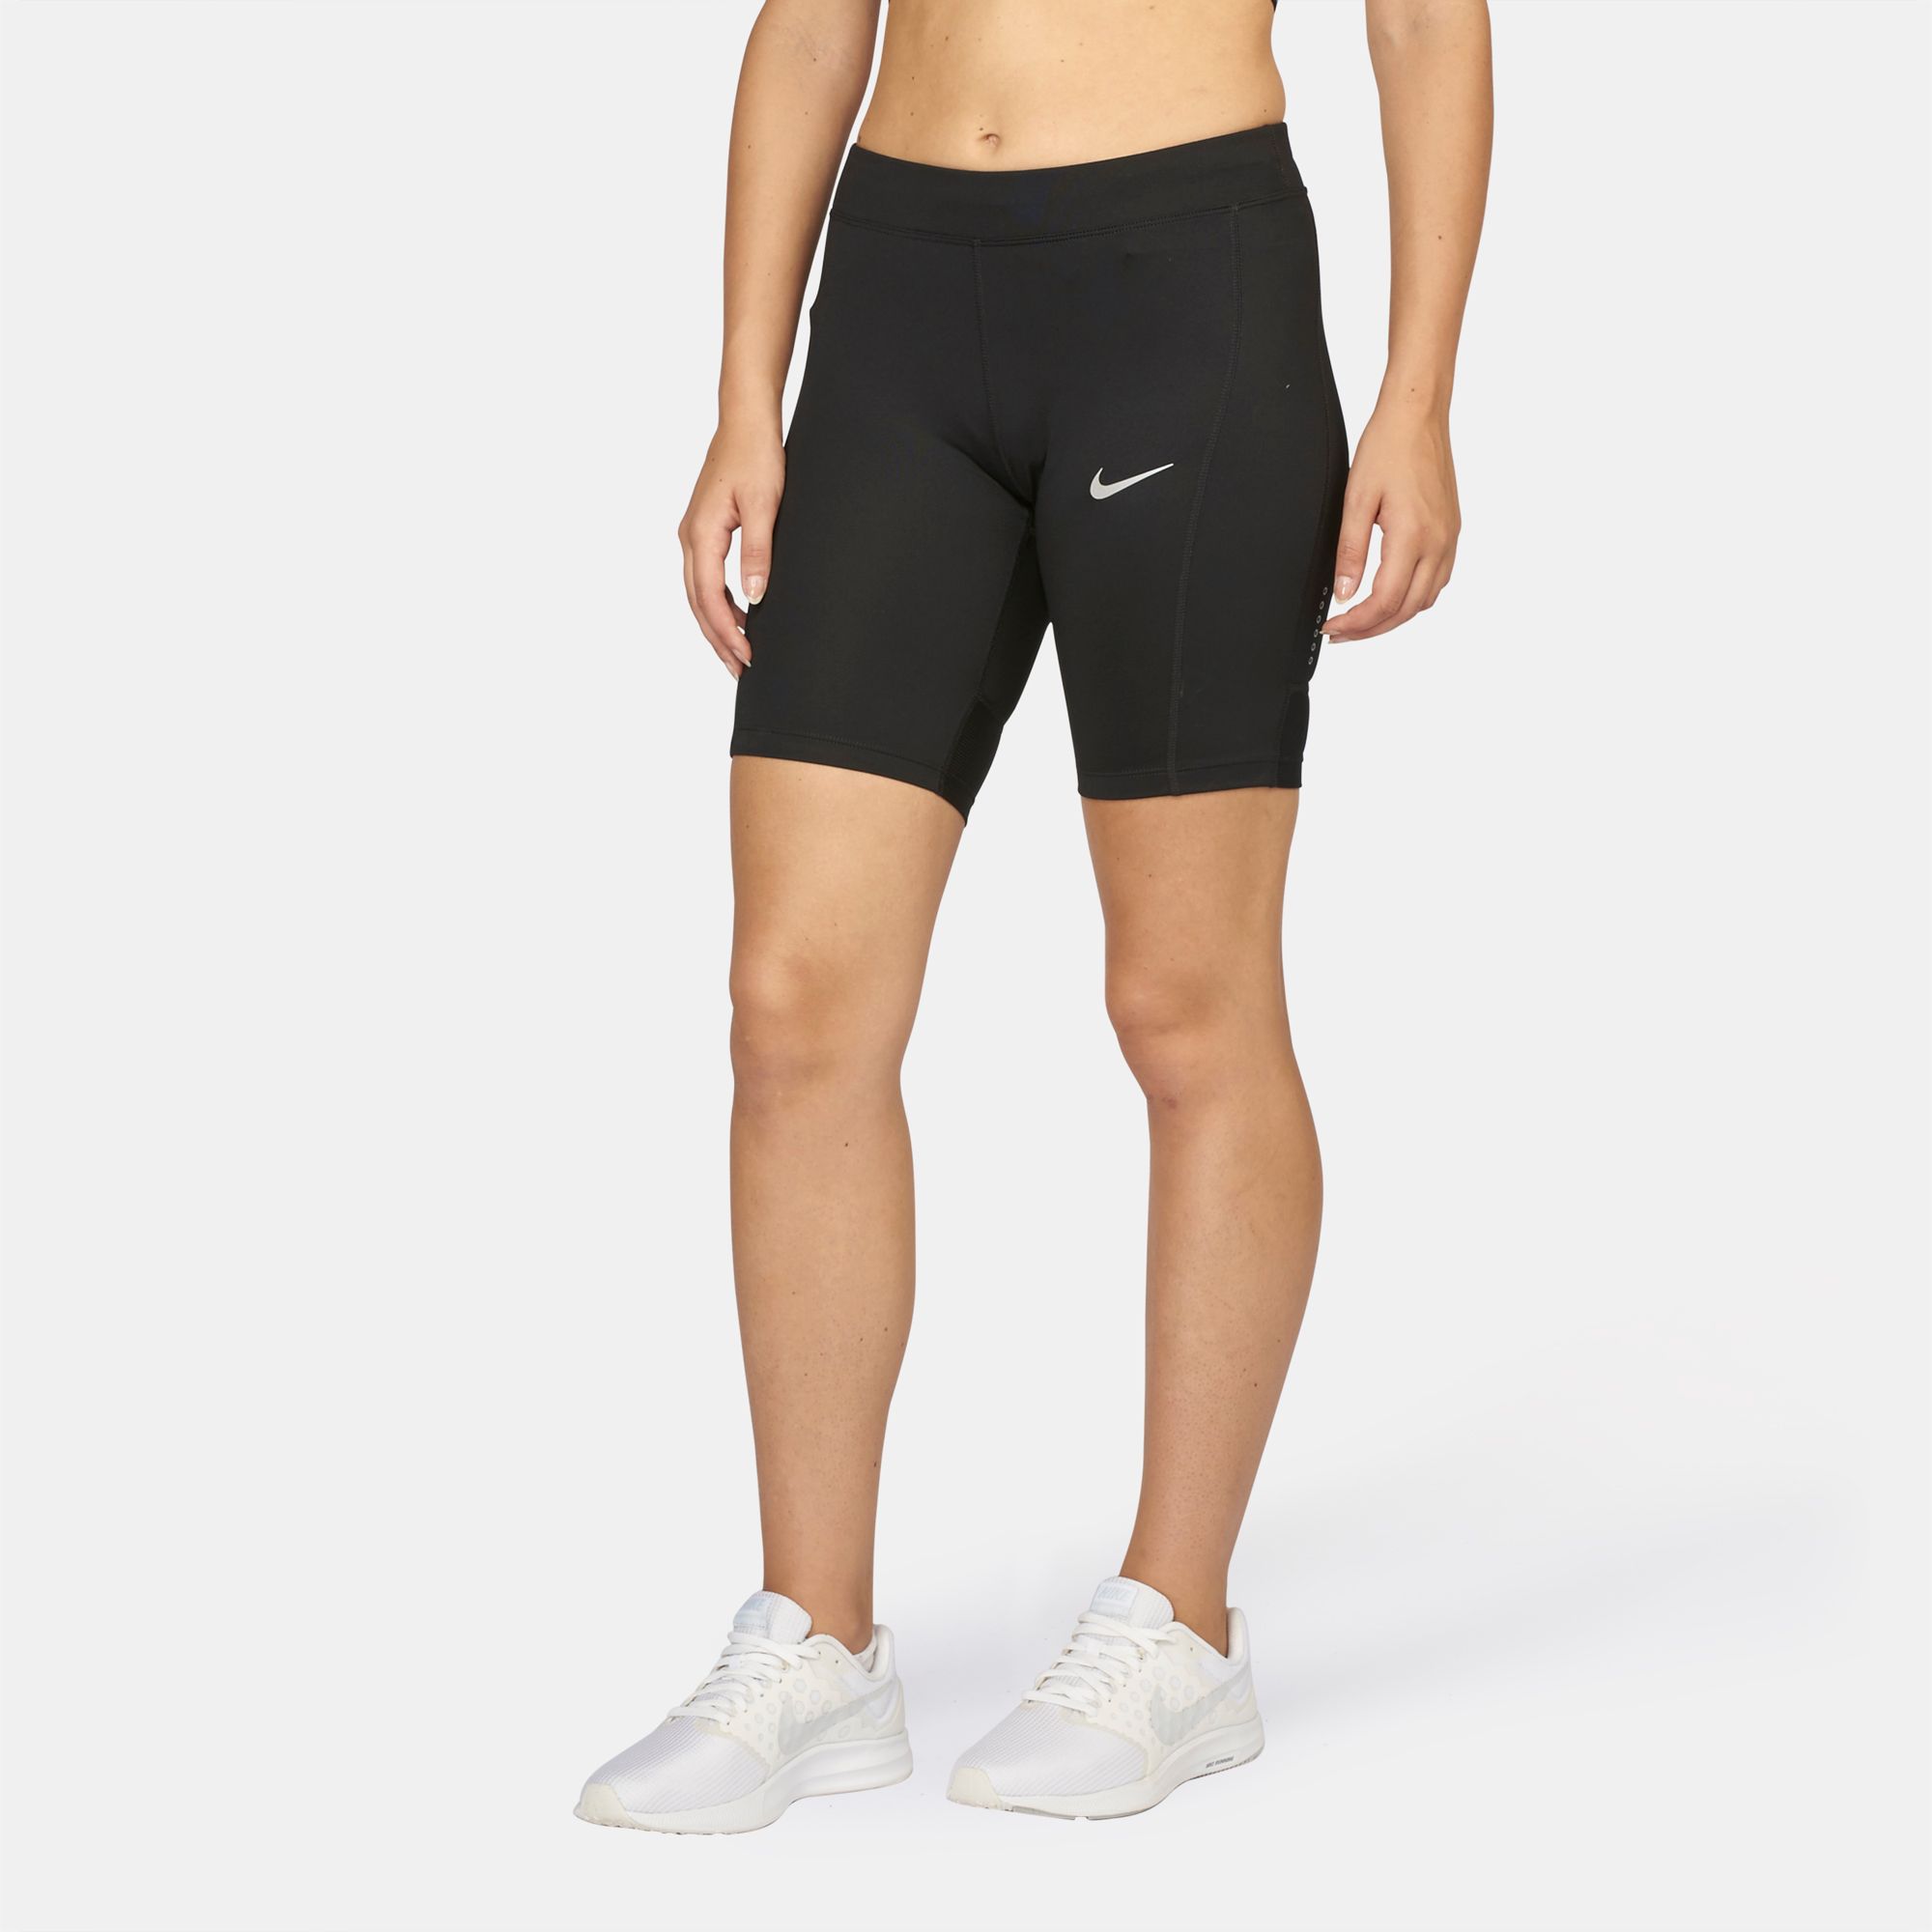 nike 8 inch running shorts